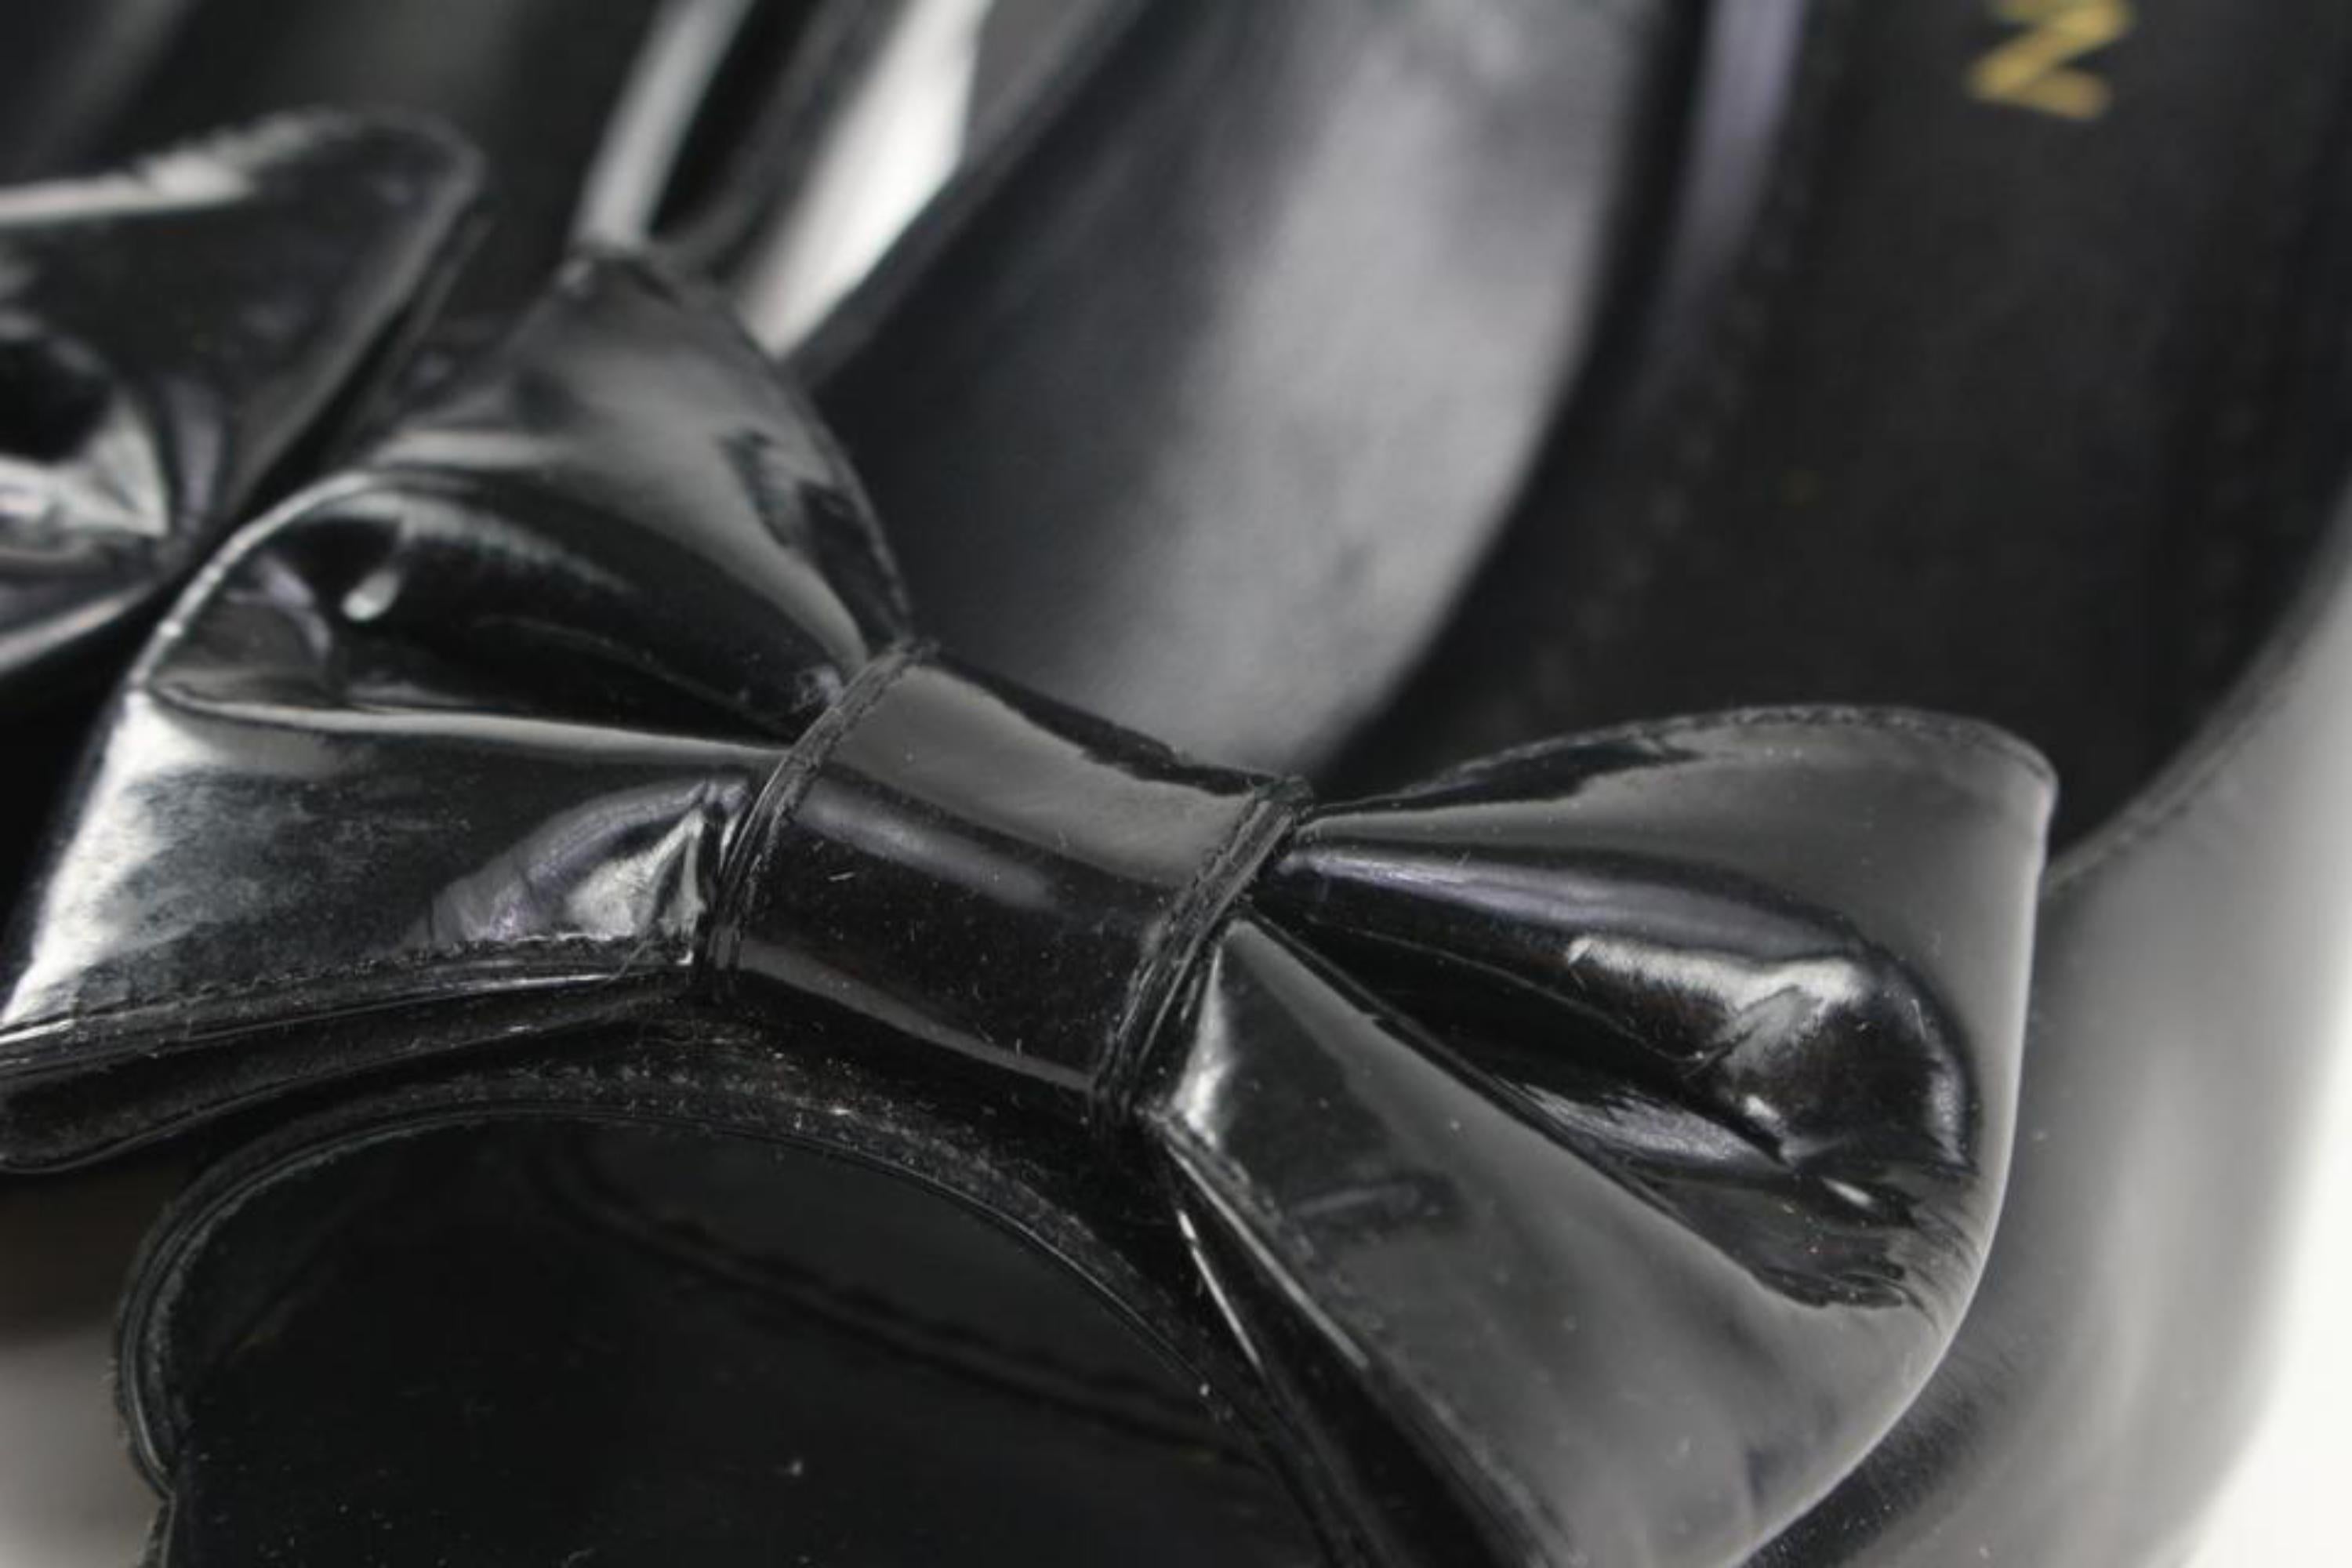 Louis Vuitton Size 38 Black Patent Bow Motif Open Toe Heels